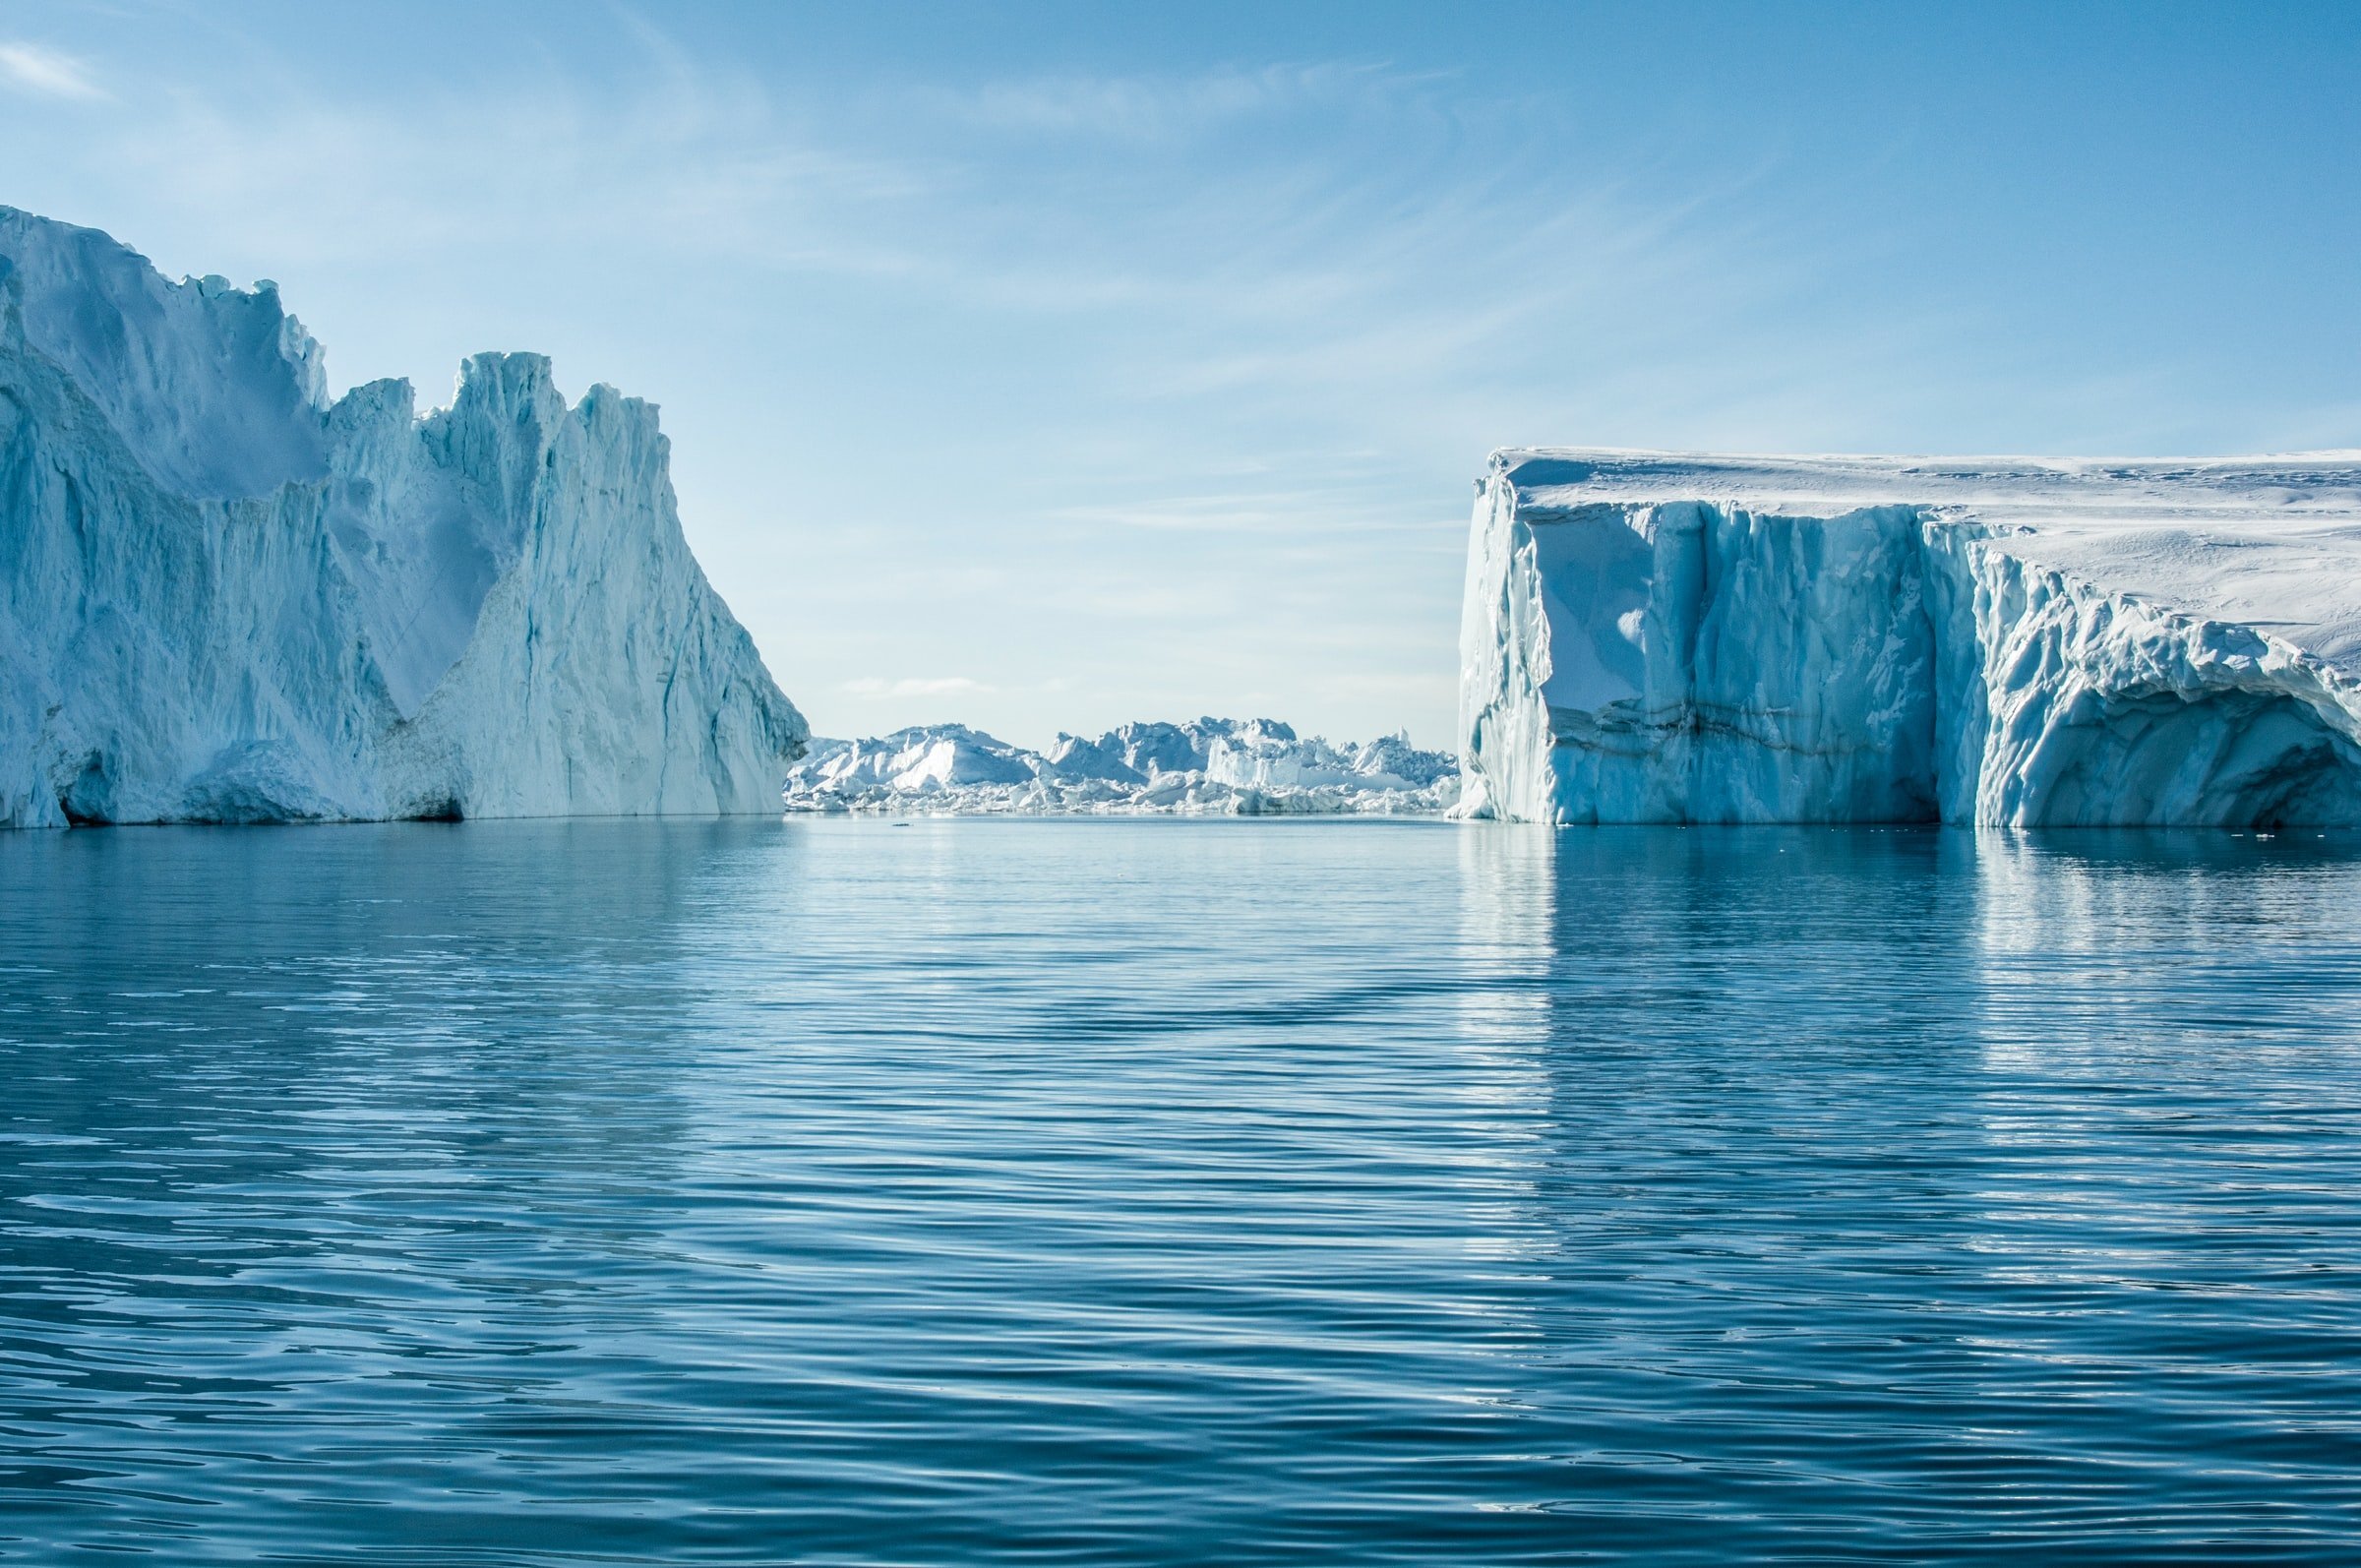 Exposed Antarctic Sea Floor – never seen before